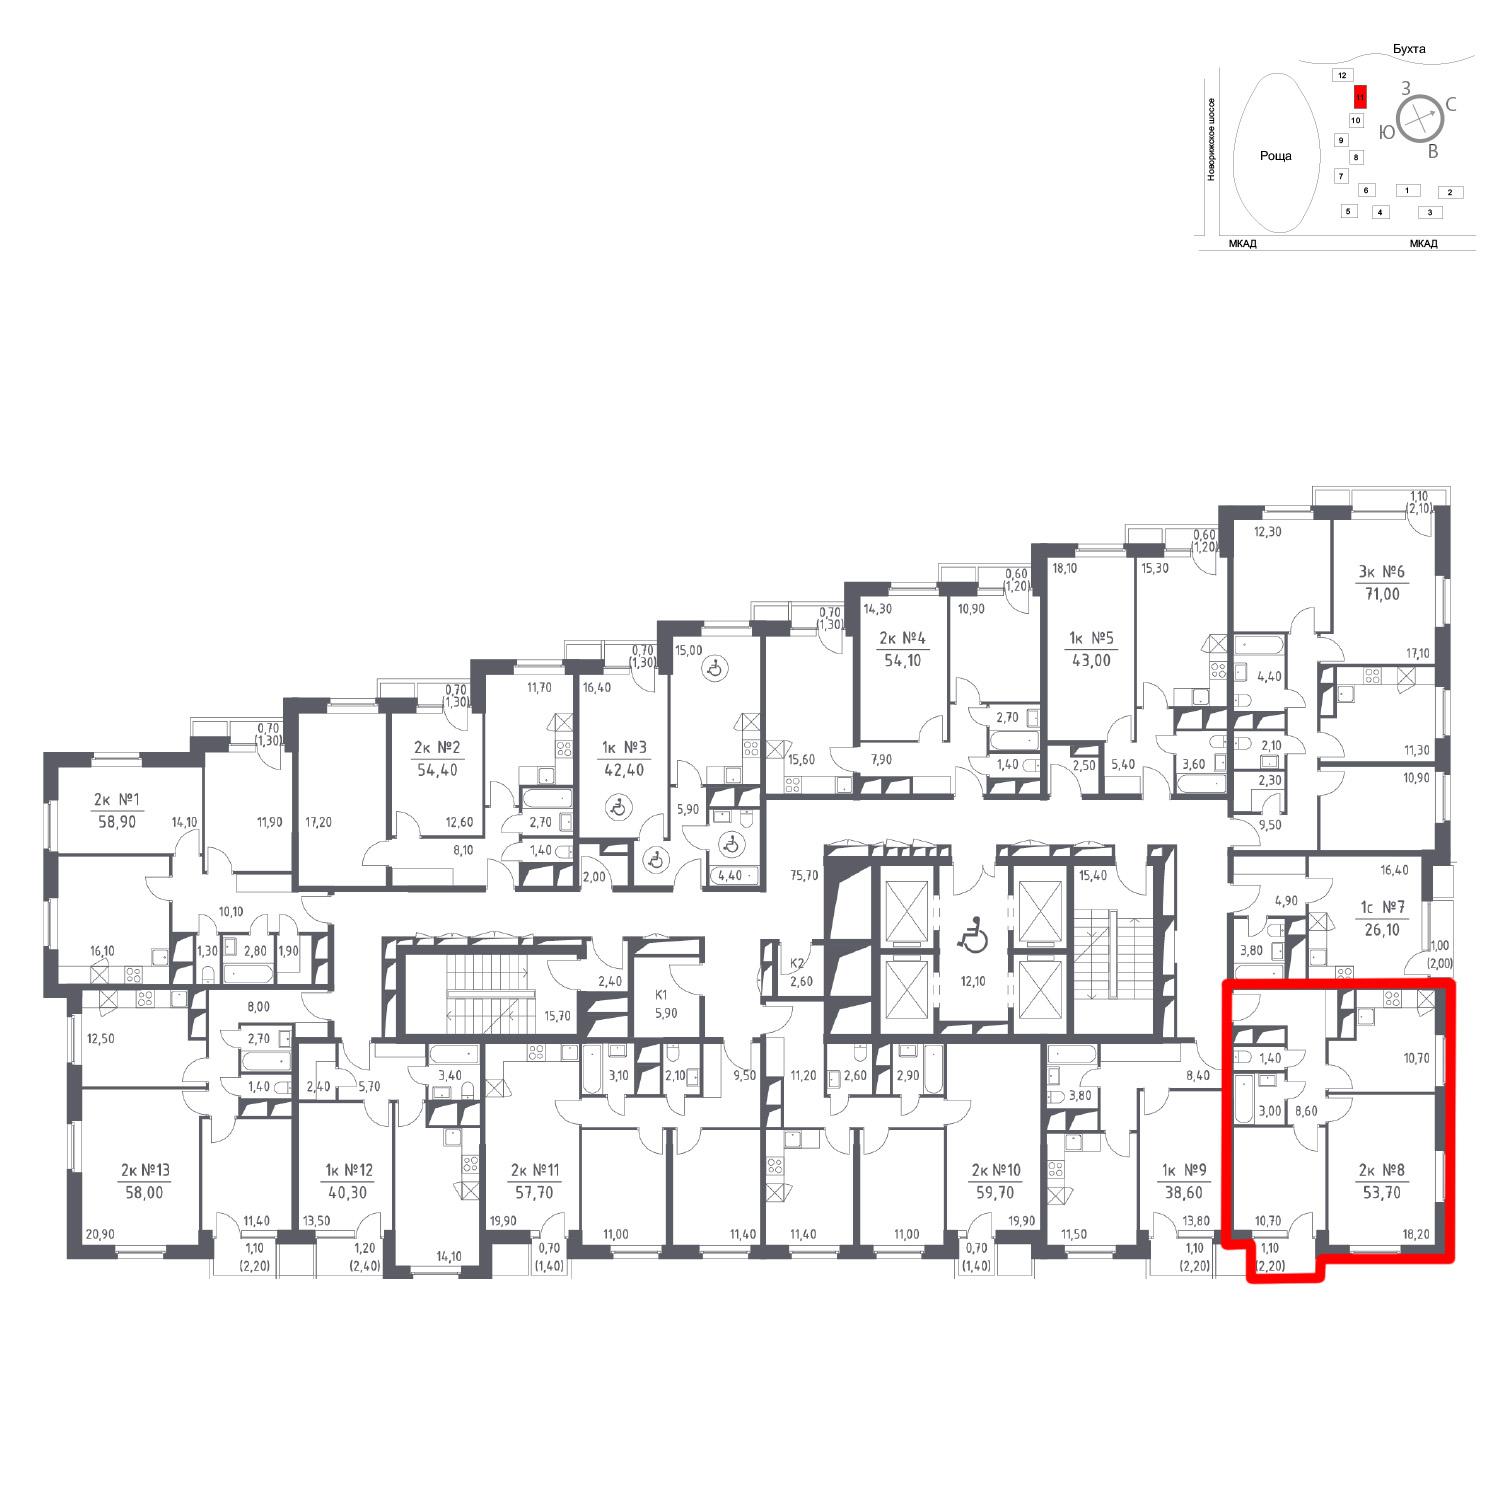 Продаётся 2-комнатная квартира в новостройке 53.7 кв.м. этаж 22/33 за 0 руб 